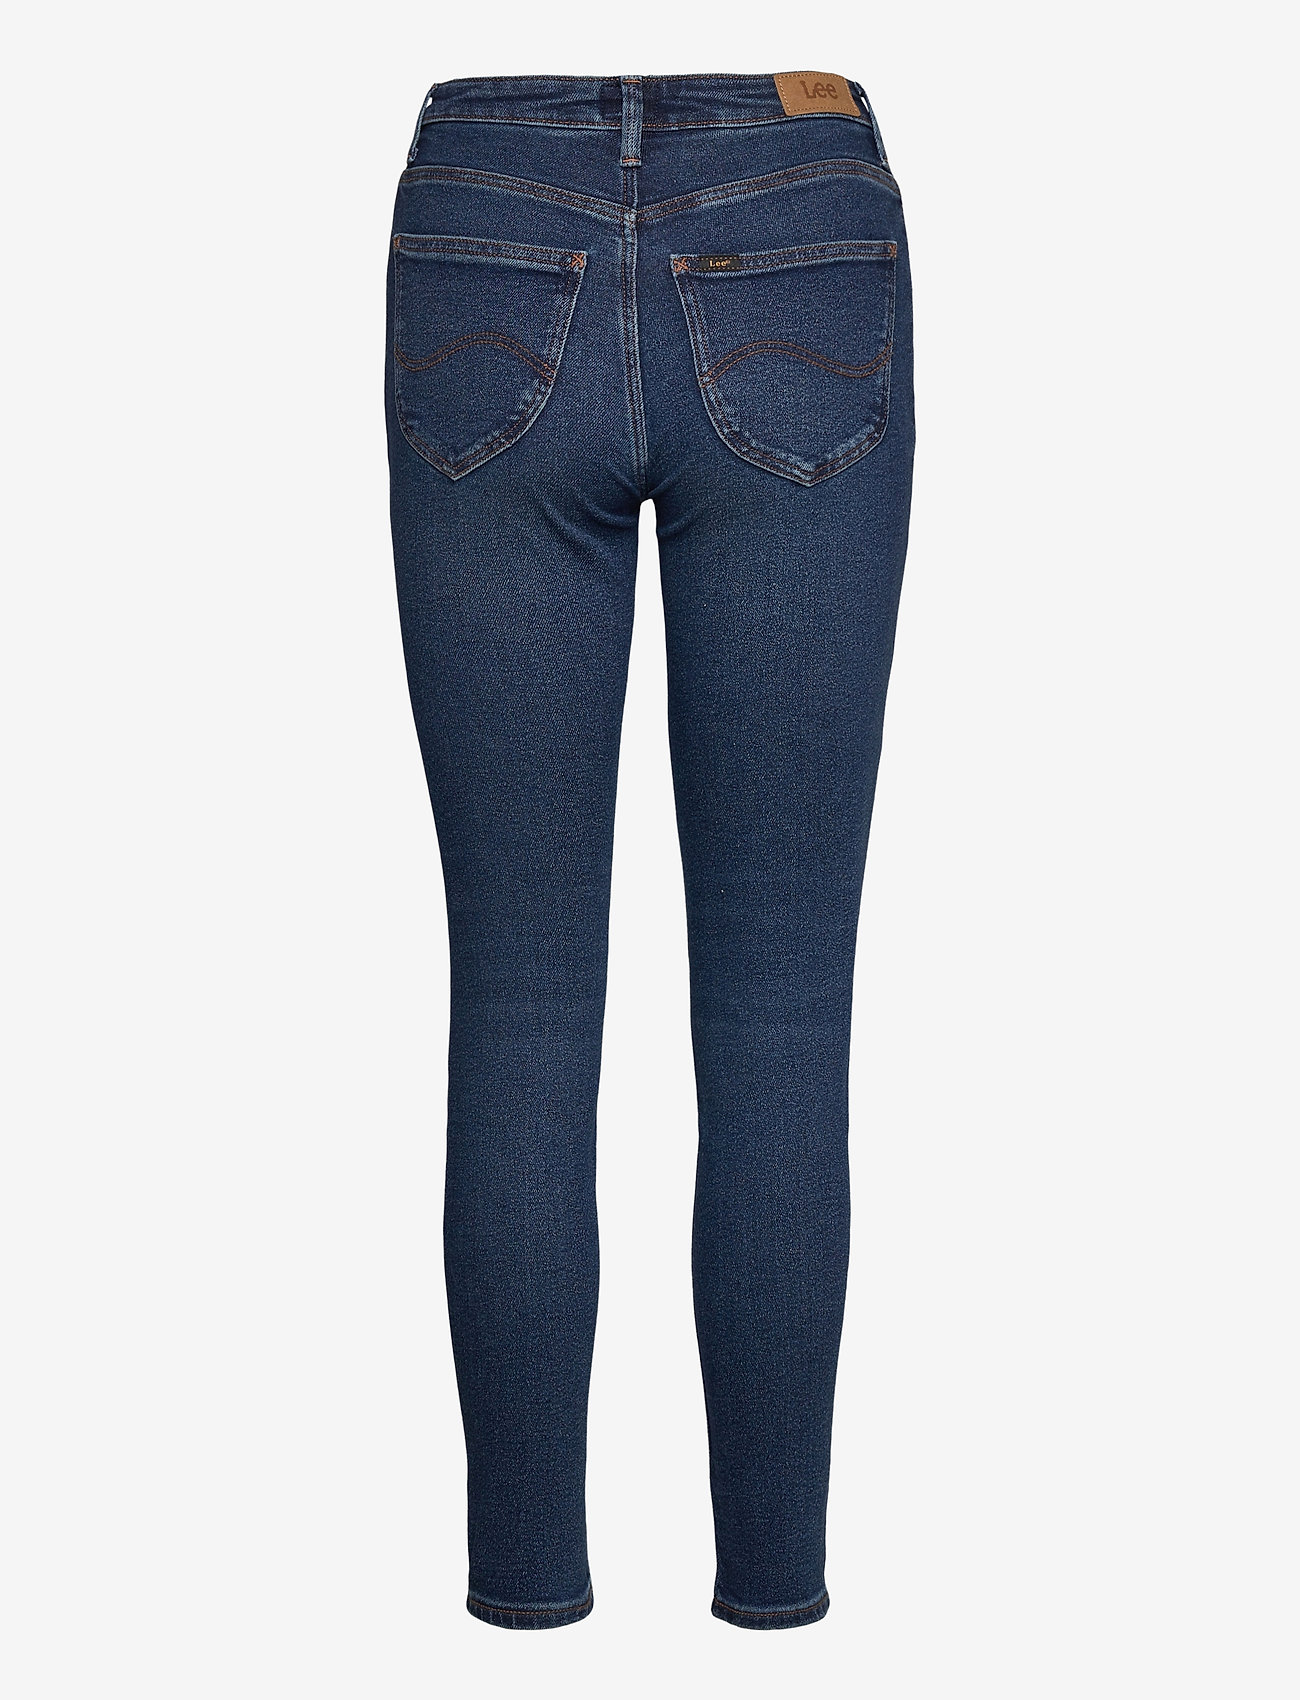 Lee Jeans - Scarlett High - skinny jeans - dark de niro - 1